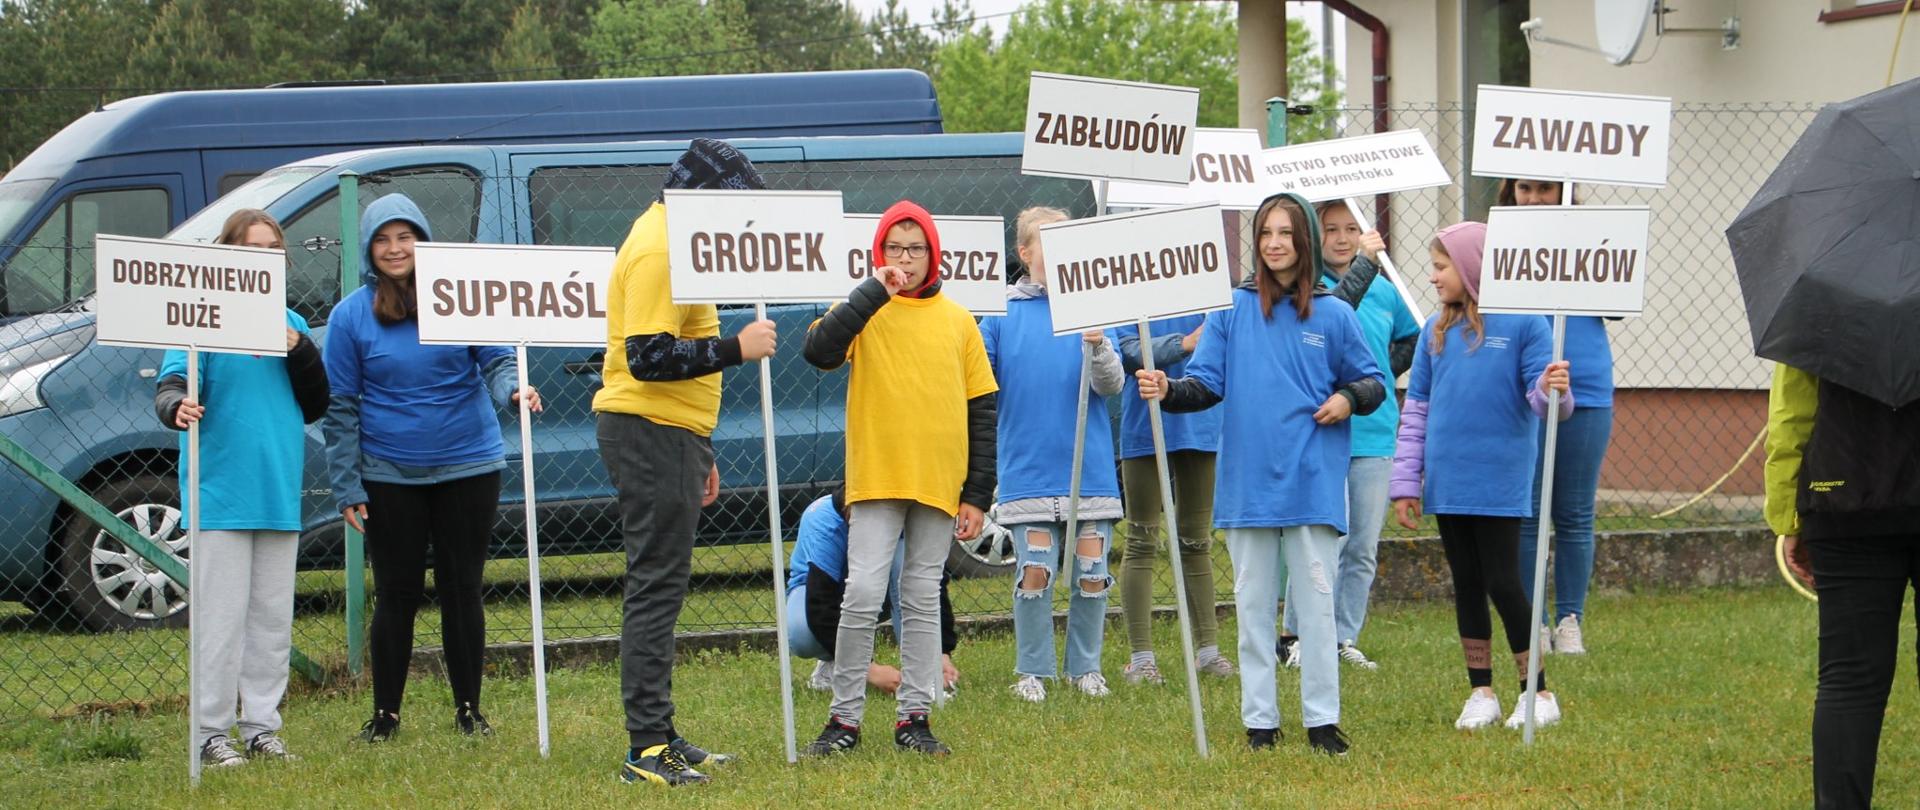 XVII Spartakiada Samorządowa Powiatu Białostockiego - młodzi wolontariusze
